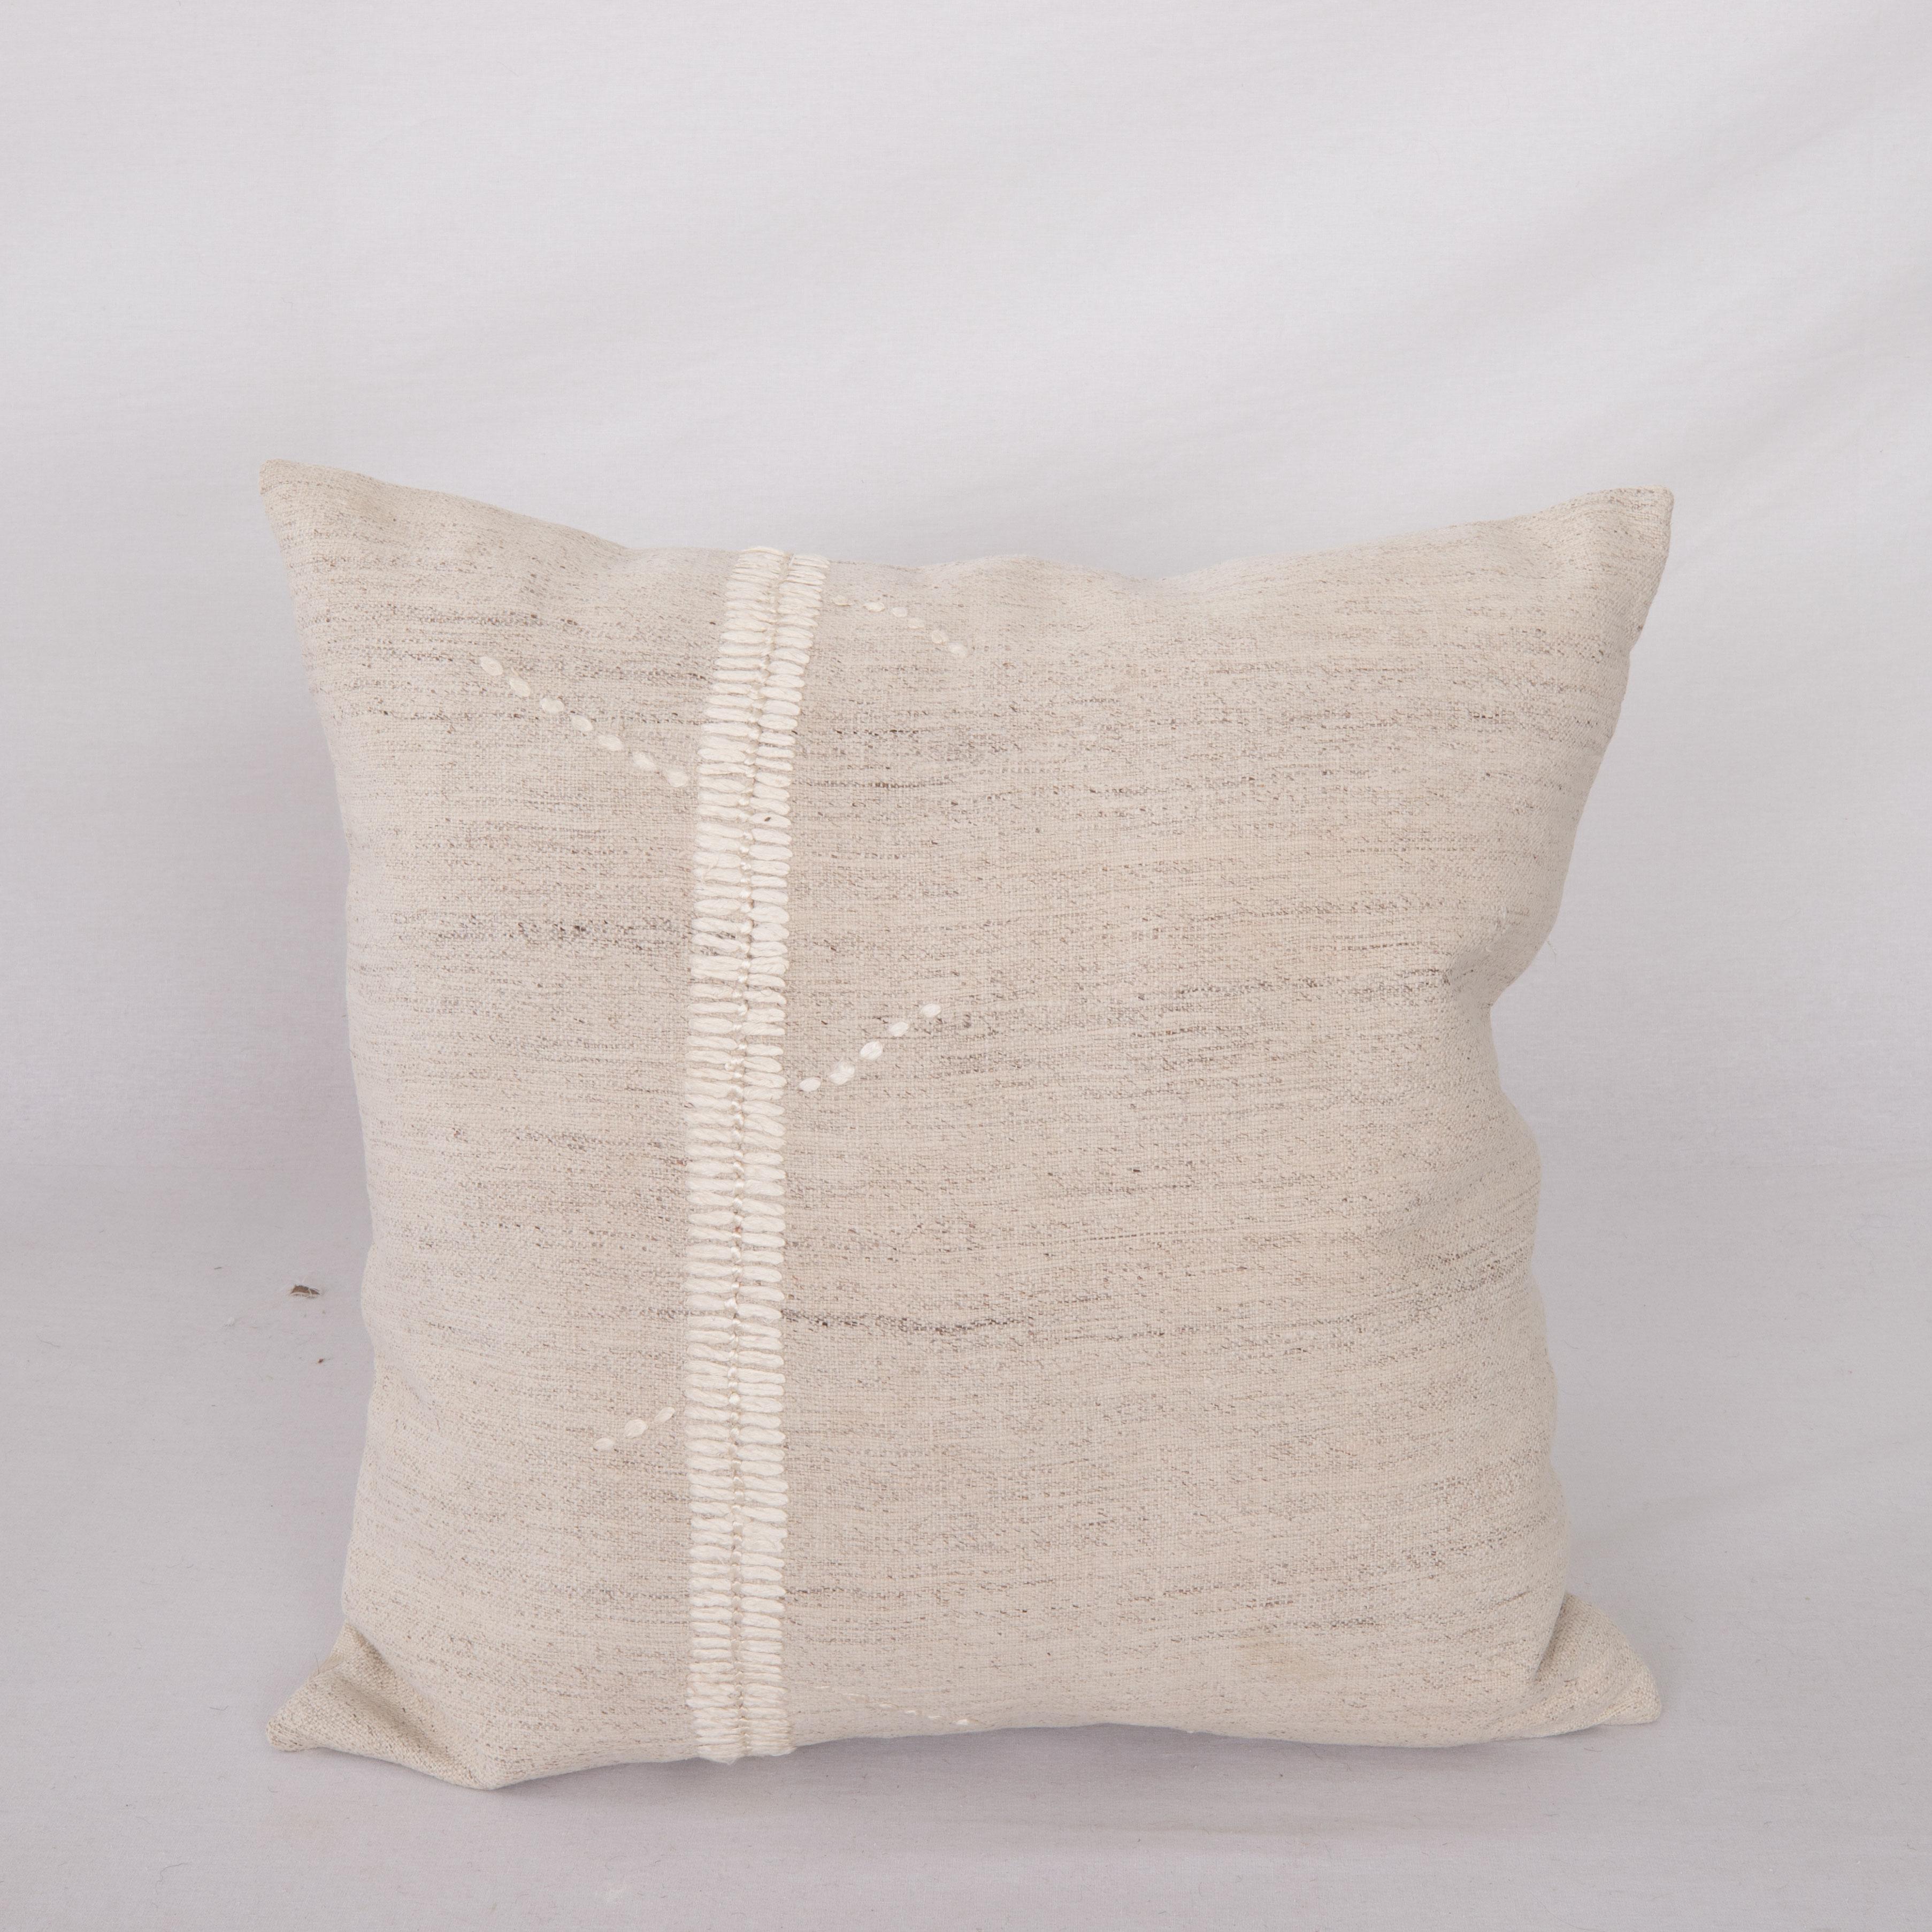 Cette taie d'oreiller est fabriquée à partir d'une housse de coton anatolien vintage. Les coutures en soie faites à la main sont un ajout à la pièce pour lui donner un détail raffiné.

Il n'est pas livré avec des inserts.
lin dans le dos.
Fermeture